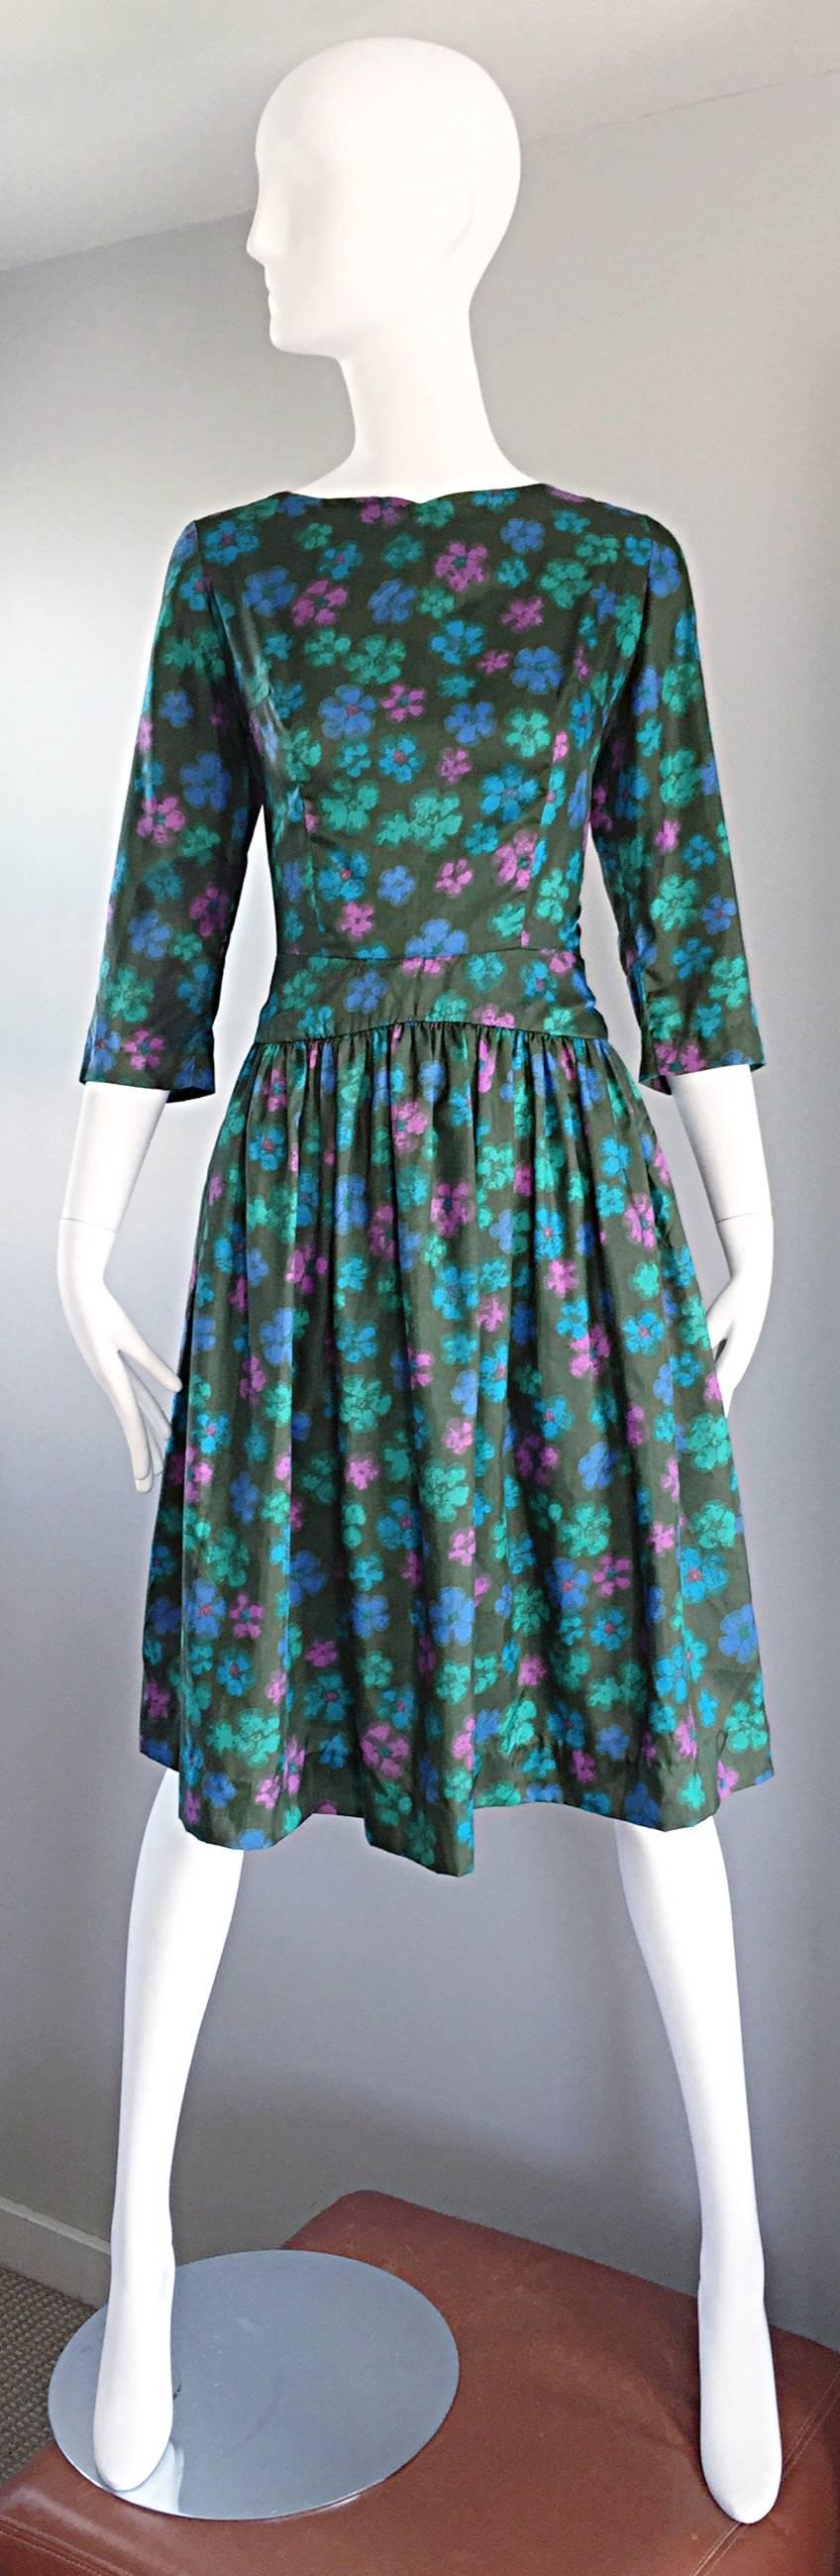 Magnifique robe vintage des années 50 conçue par la seconde épouse du grand joueur de baseball Leo Durocher, Grace Dozier Durocher, pour CAROLE KING ! Luxueuse soie vert foncé, avec des fleurs aquarelles sérigraphiées en rose, bleu et vert sarcelle.